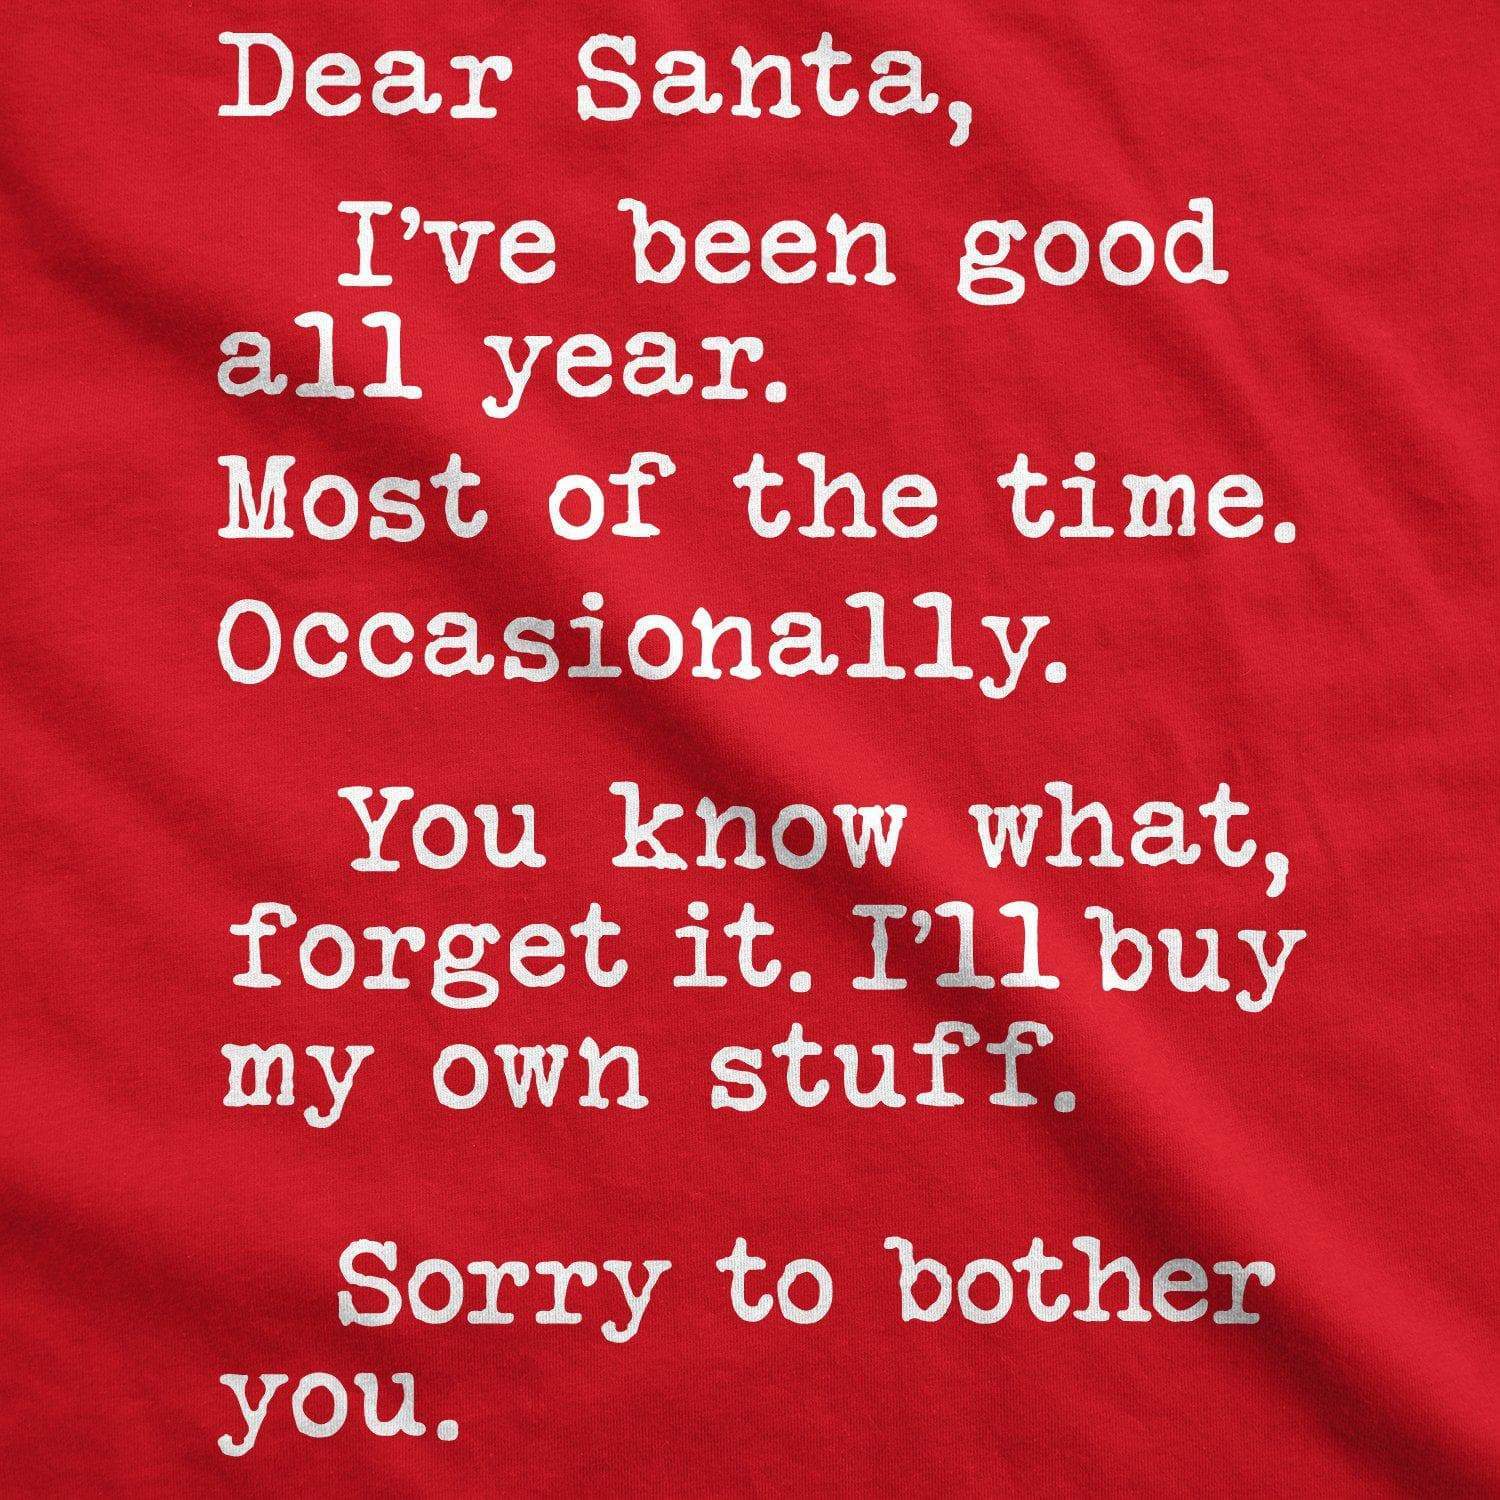 Dear Santa I'll Buy My Own Stuff Women's Tshirt - Crazy Dog T-Shirts